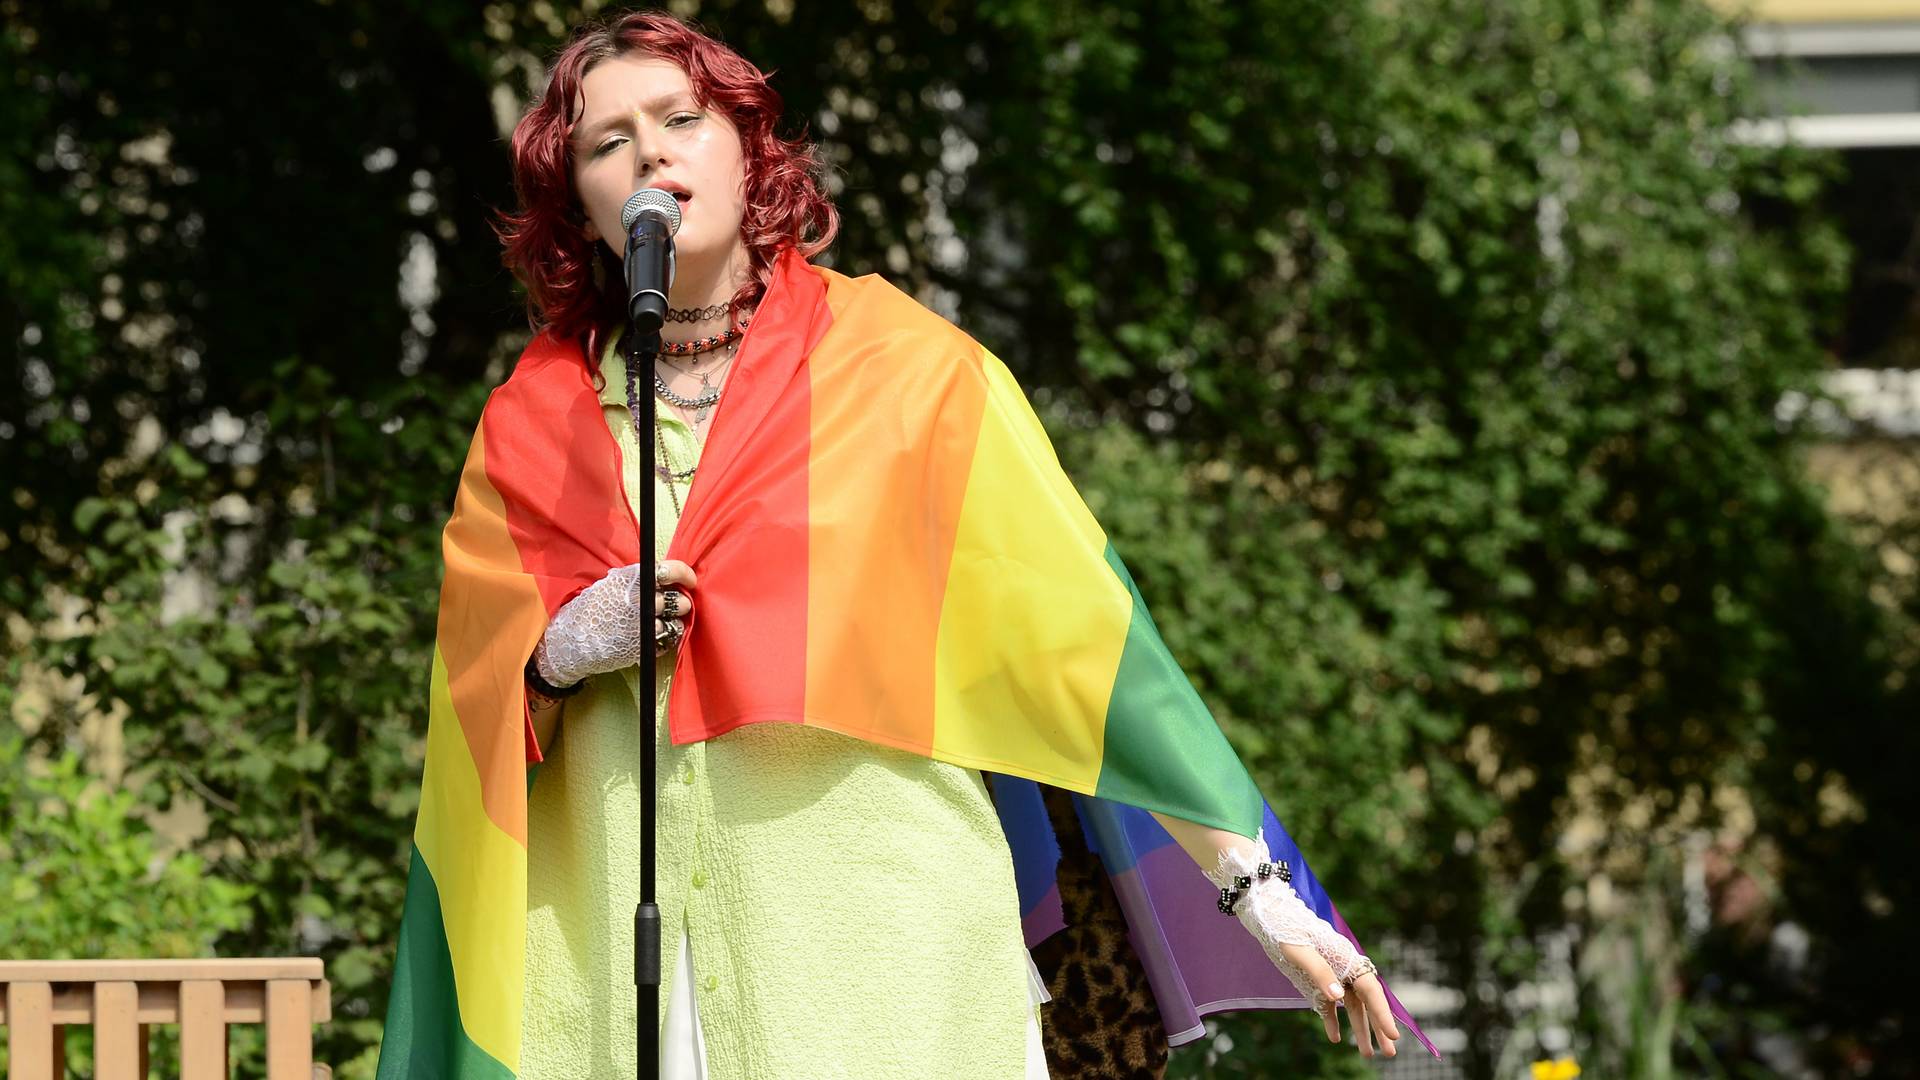 Weszła do studia TVP z flagą LGBT. "Ludzie dziękują za to, że zagrałam Telewizji Polskiej na nosie"